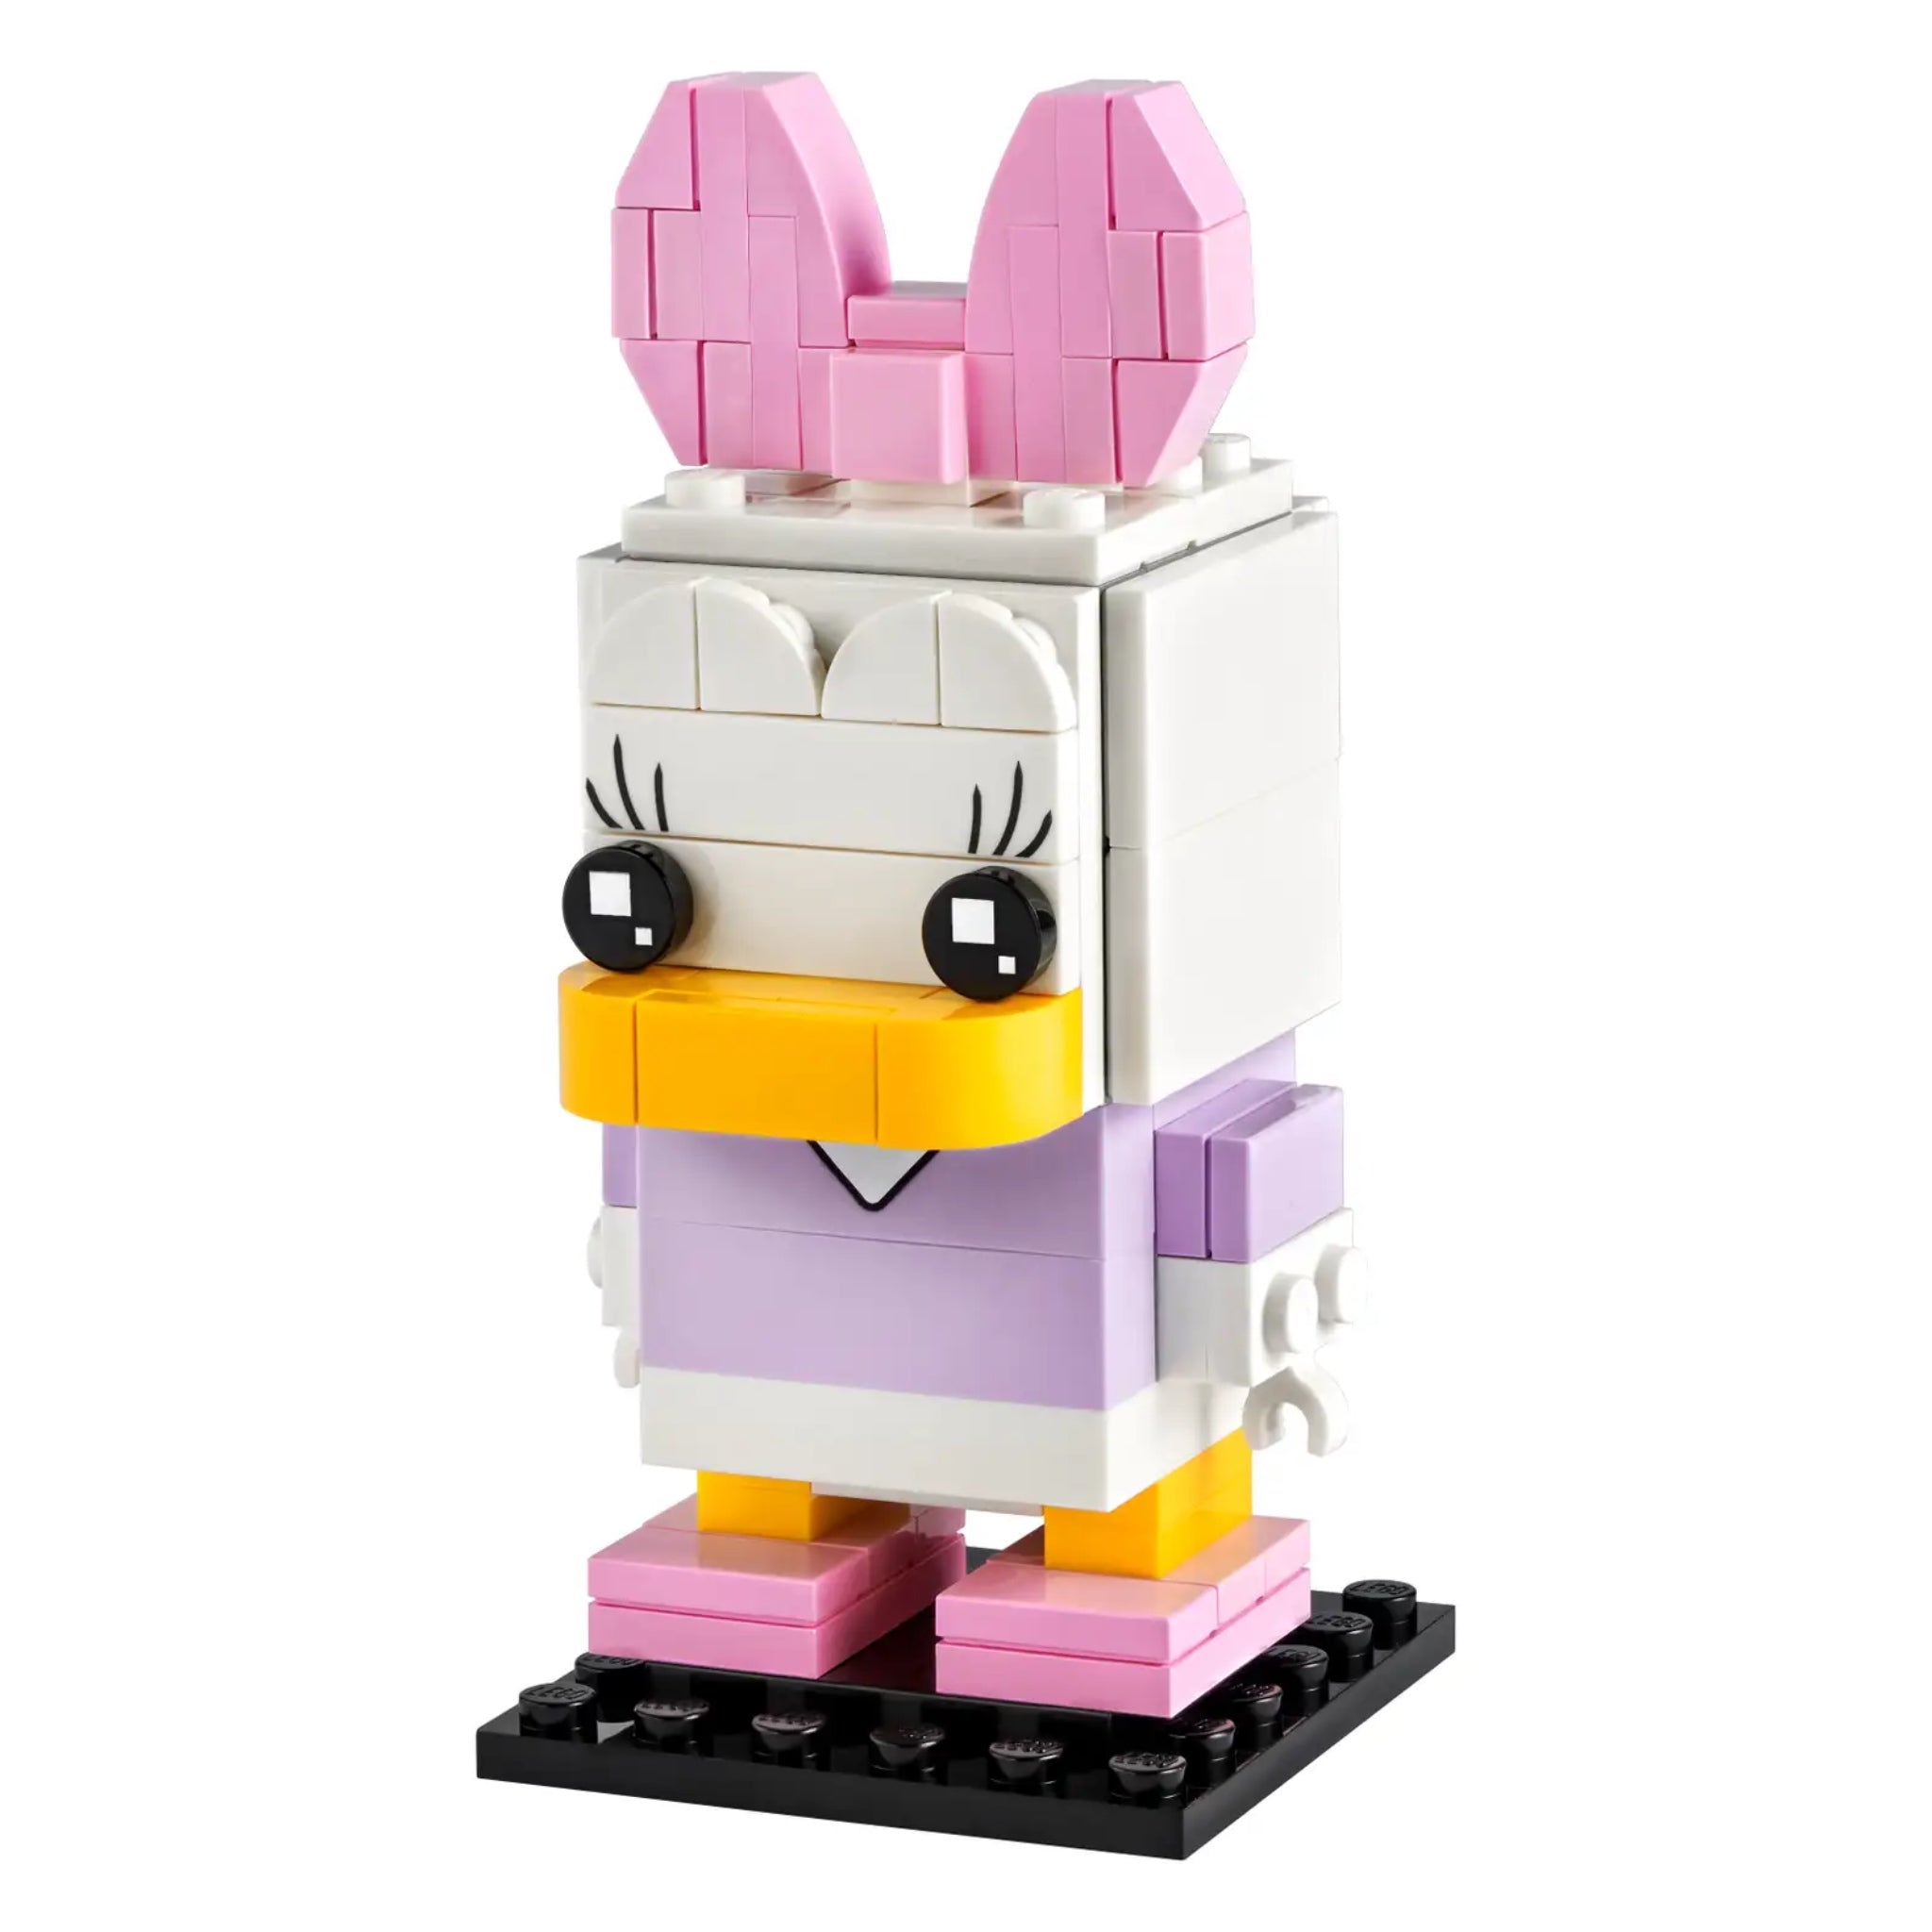 LEGO 40476 BrickHeadz Daisy Duck